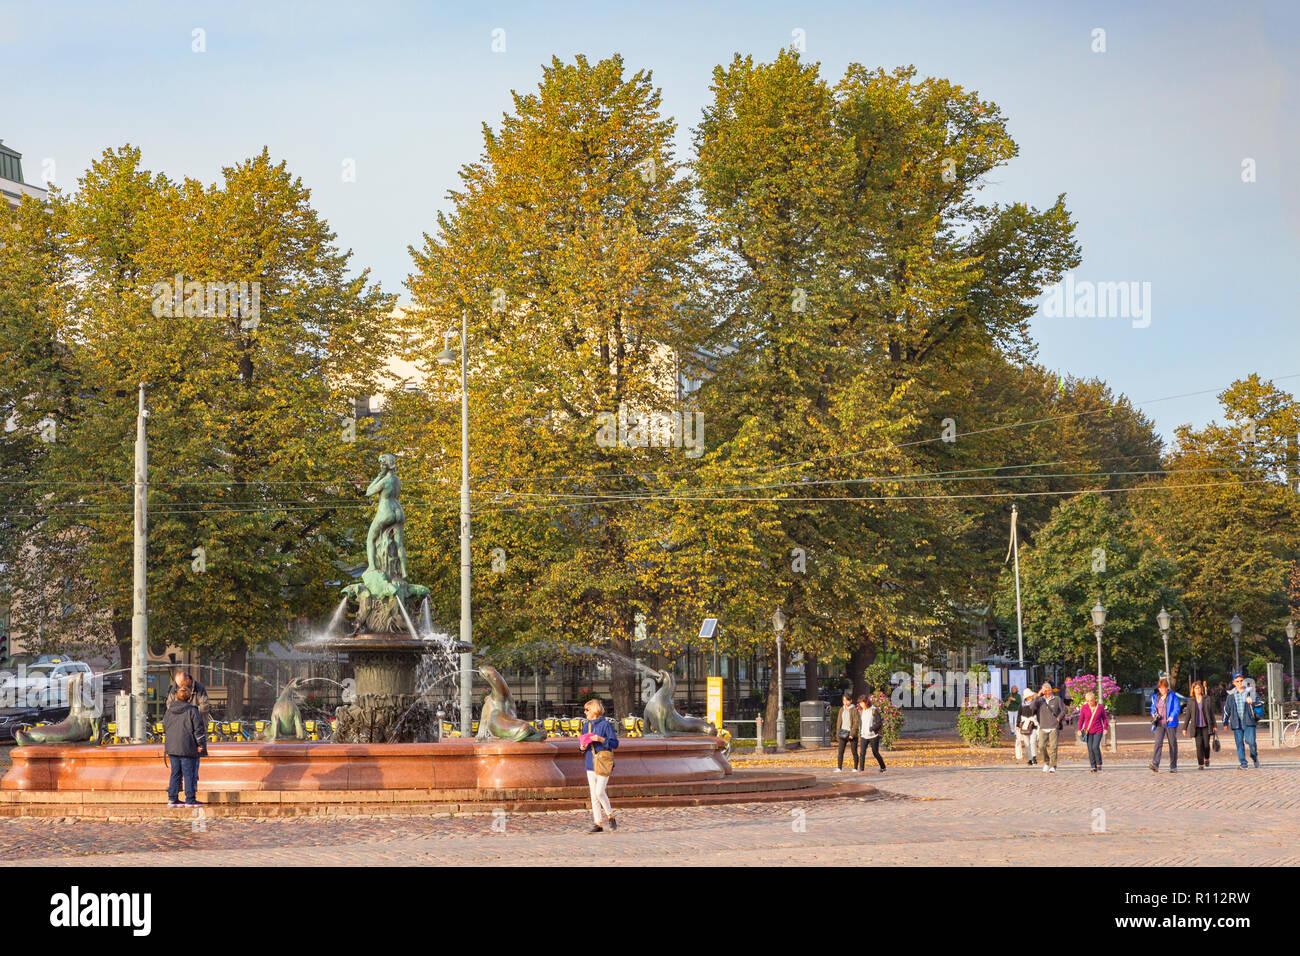 20 Settembre 2018: Helsinki, Finlandia - Havis Amanda statua, da Ville Vallgren, in piazza del mercato su una soleggiata giornata autunnale. Foto Stock